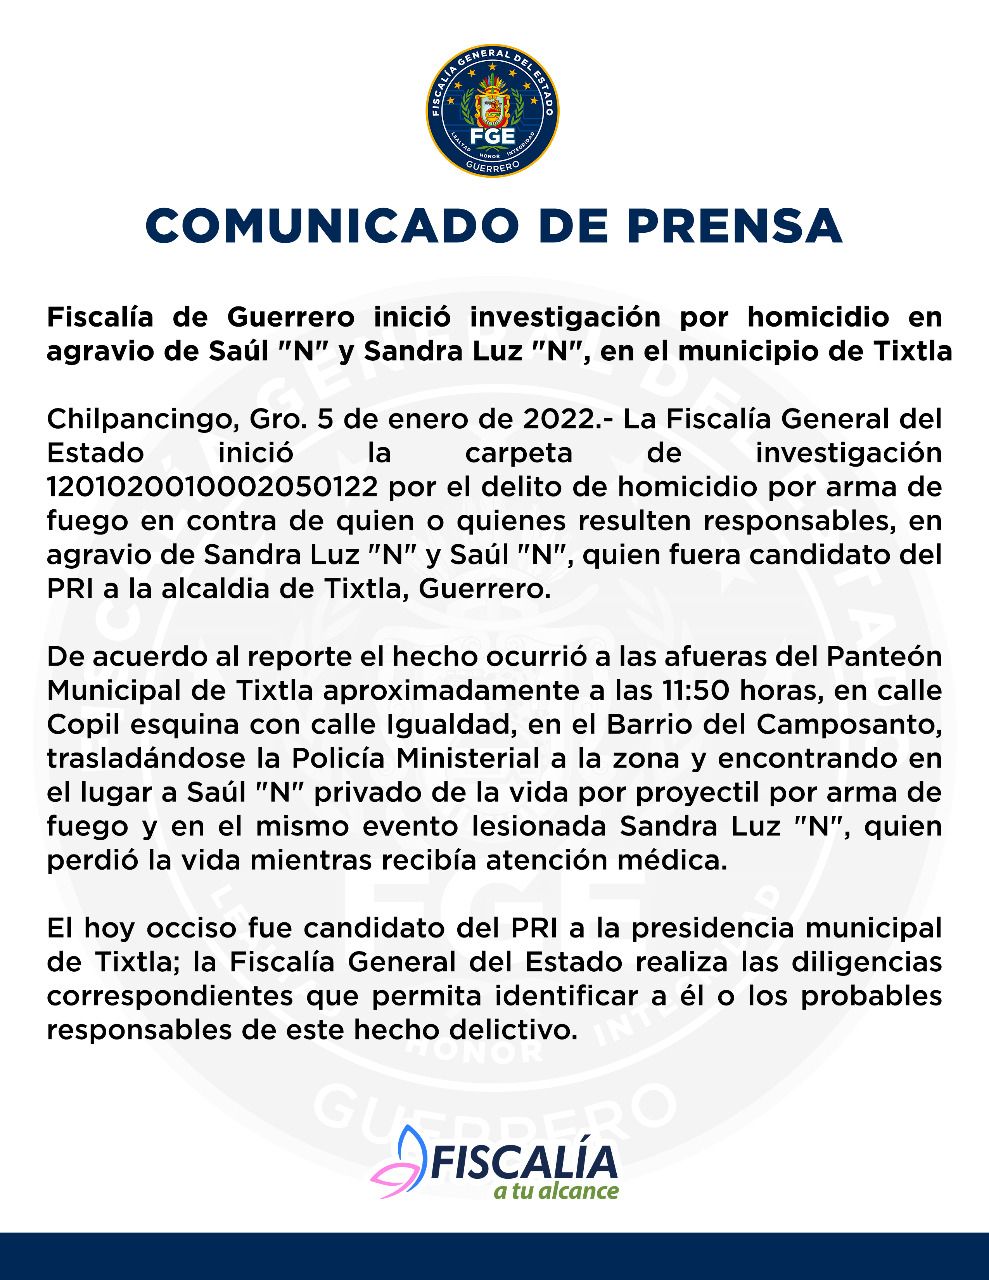 Fiscalía de Guerrero inició investigación por homicidio en agravio de Saúl "N" y Sandra Luz "N", en el municipio de Tixtla